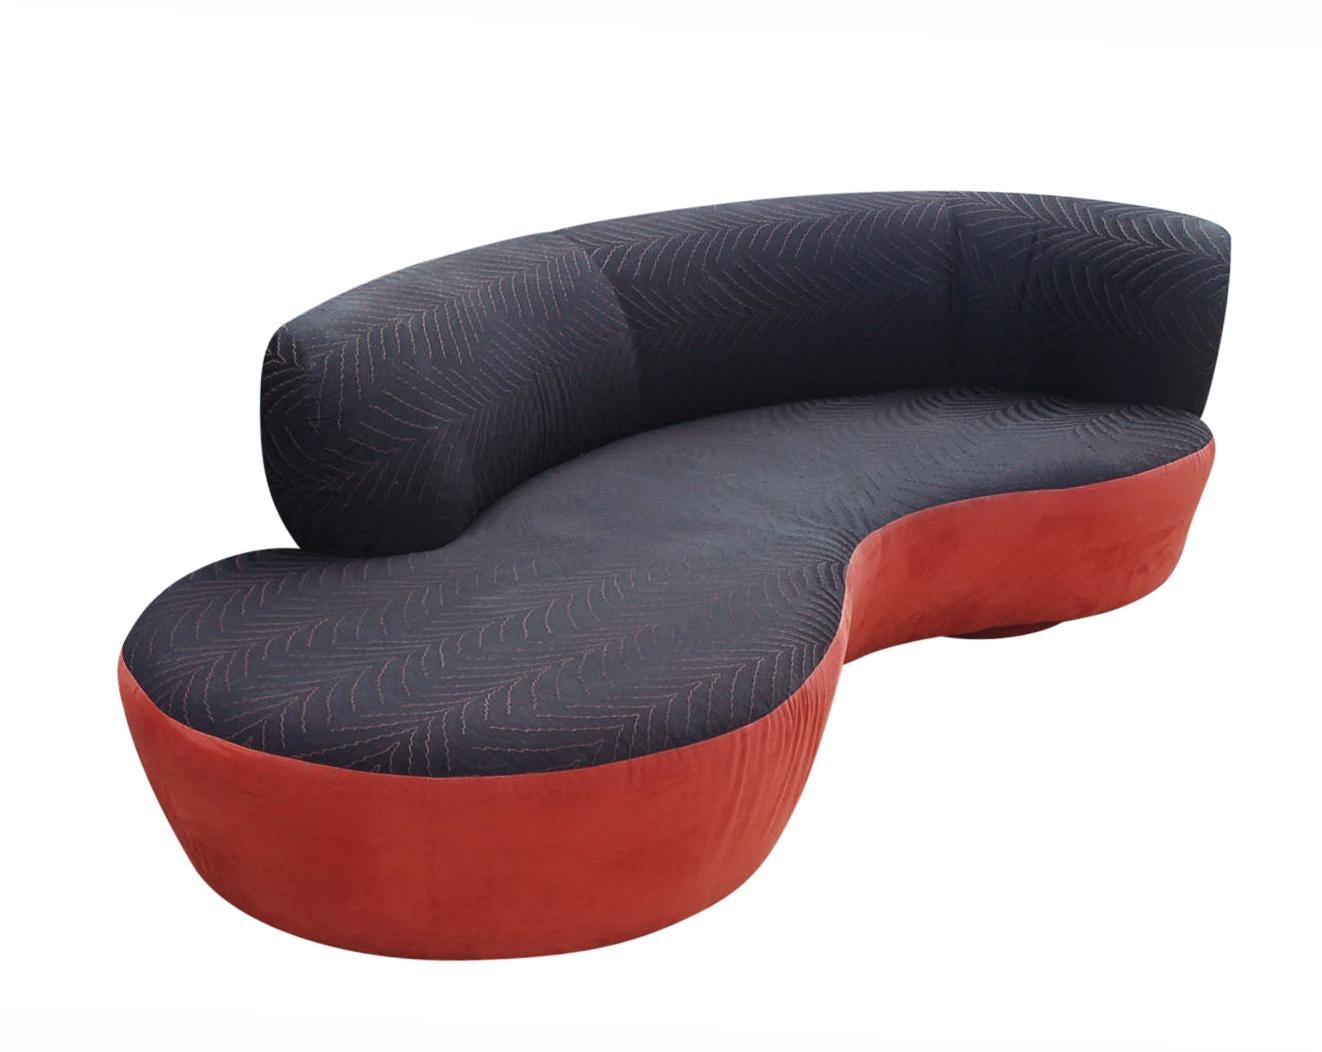 Ein elegantes, modernes Sofa, entworfen von Weiman in den 1980er Jahren. Es zeichnet sich durch ein geschwungenes Design mit kreisförmigen Sockeln und einer originellen Polsterung mit Texturdruck aus. Muss wiederhergestellt werden. Etikett des